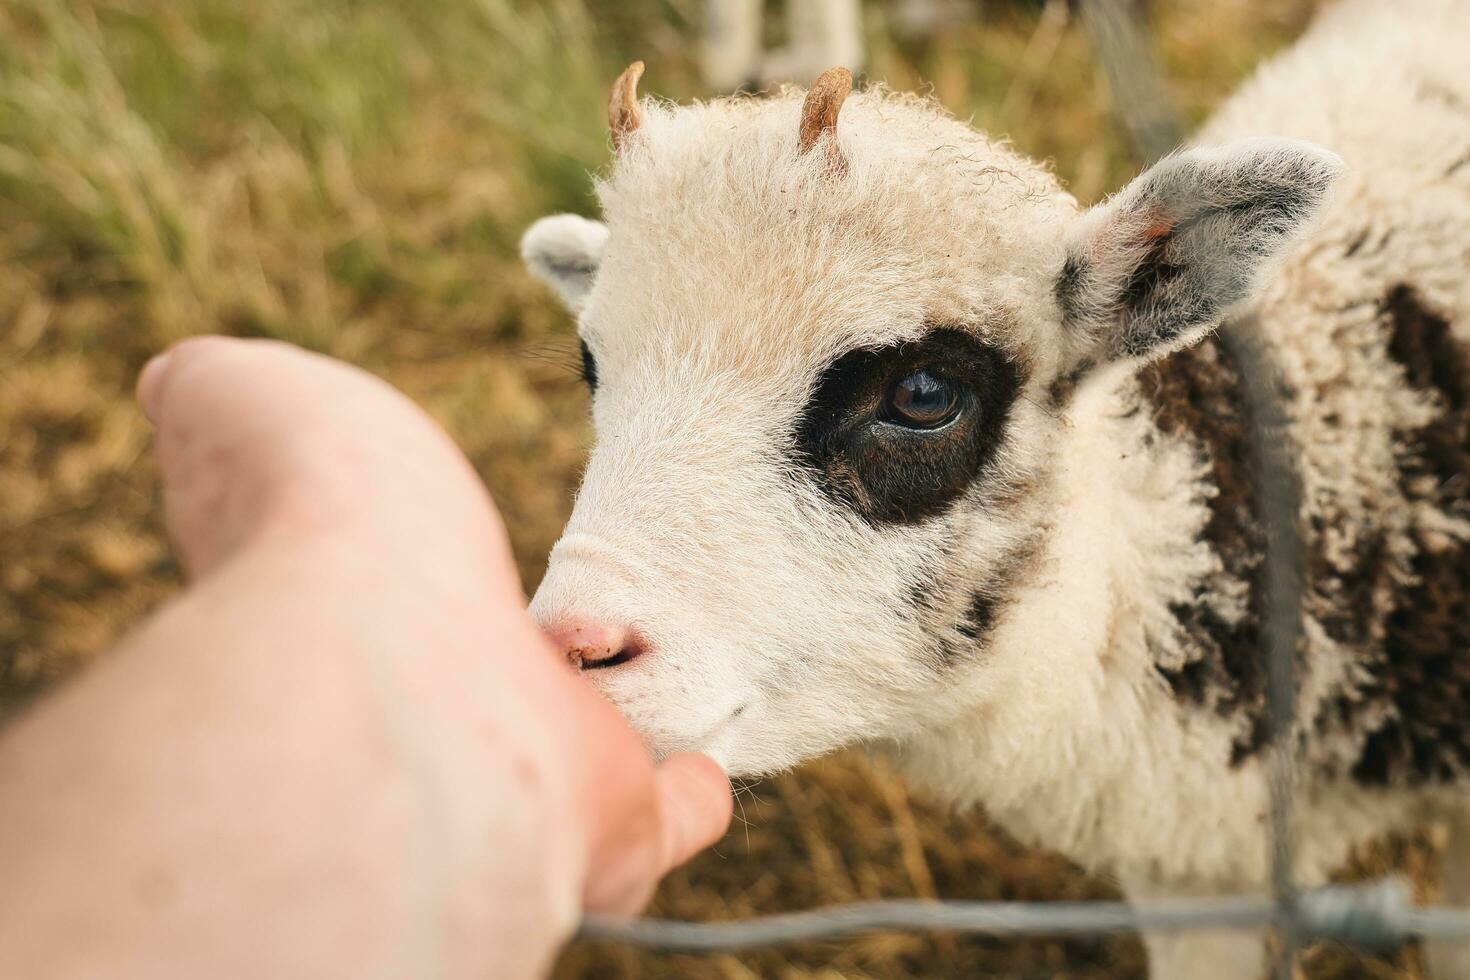 portrait coup de adorable peu bébé mouton en mangeant de Humain main photo